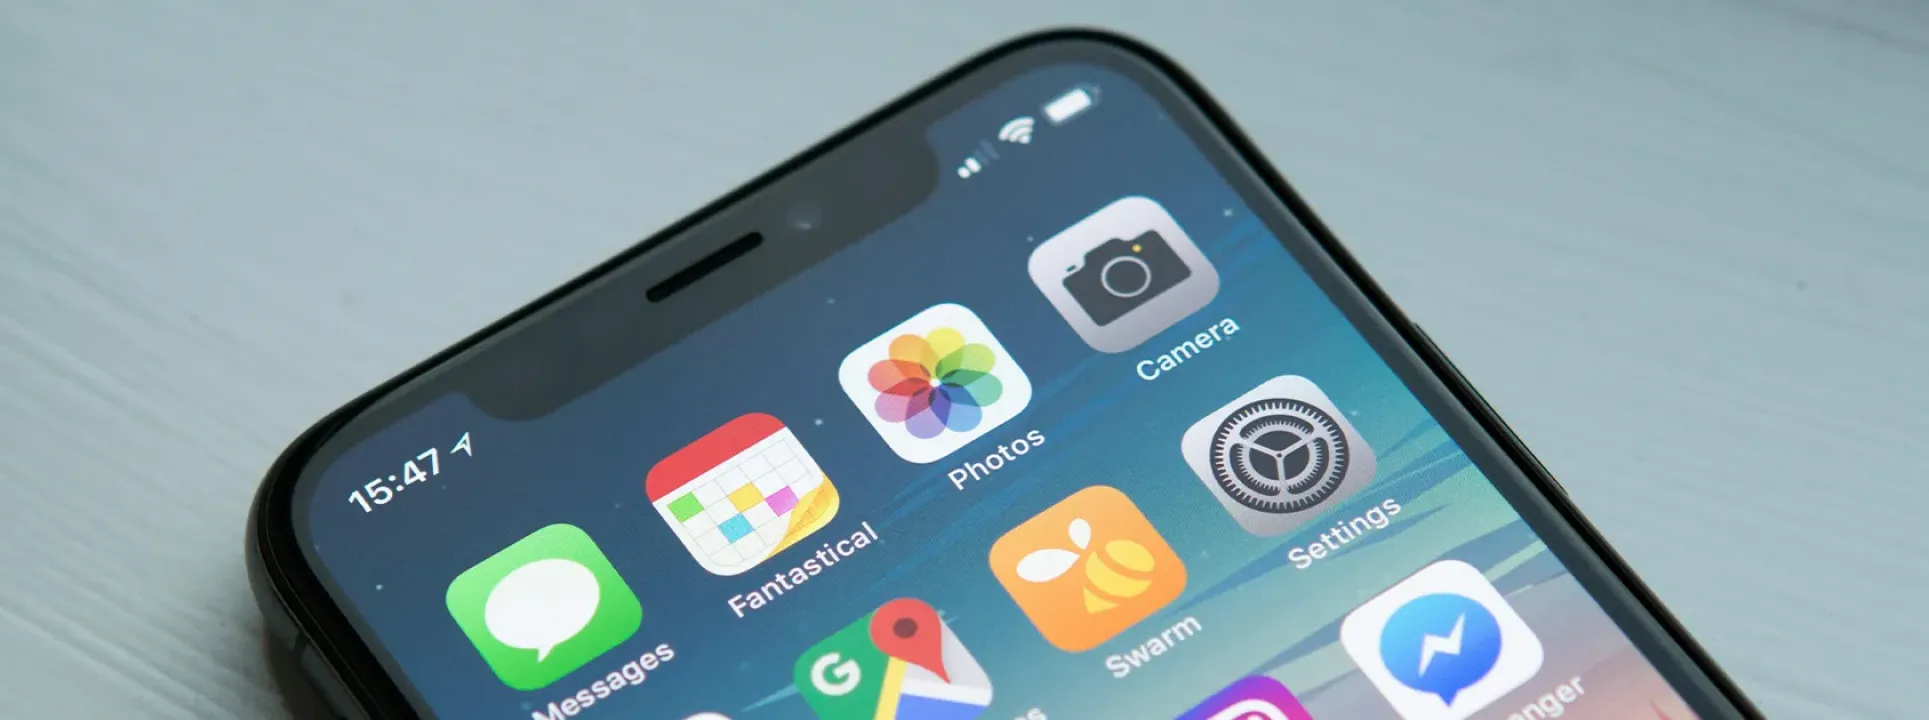 Apple lanza iOS 18: descubre sus novedades!  blog post